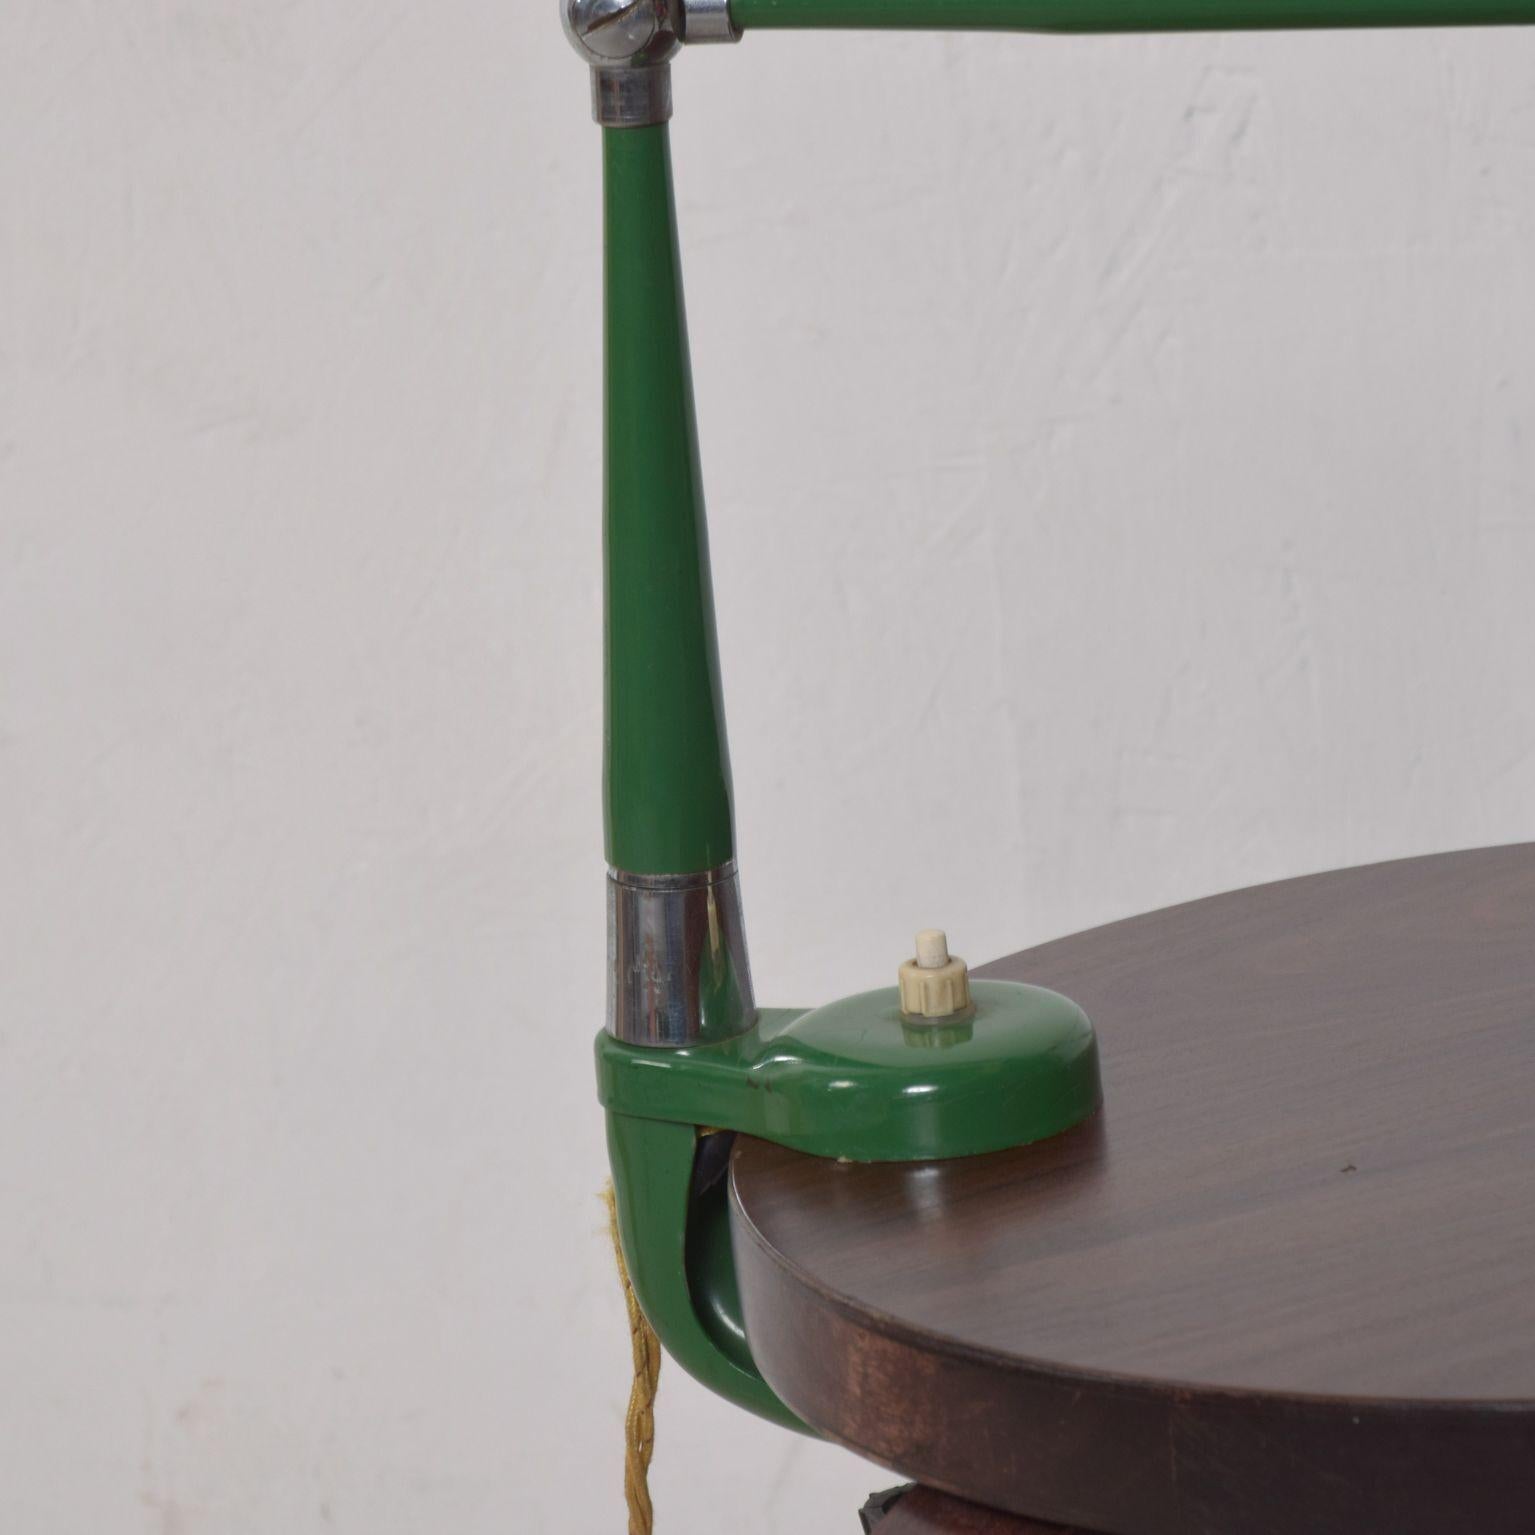 Mid-20th Century Italian Midcentury Green Adjustable Clamp Task Desk Lamp Stilnovo Style, 1950s